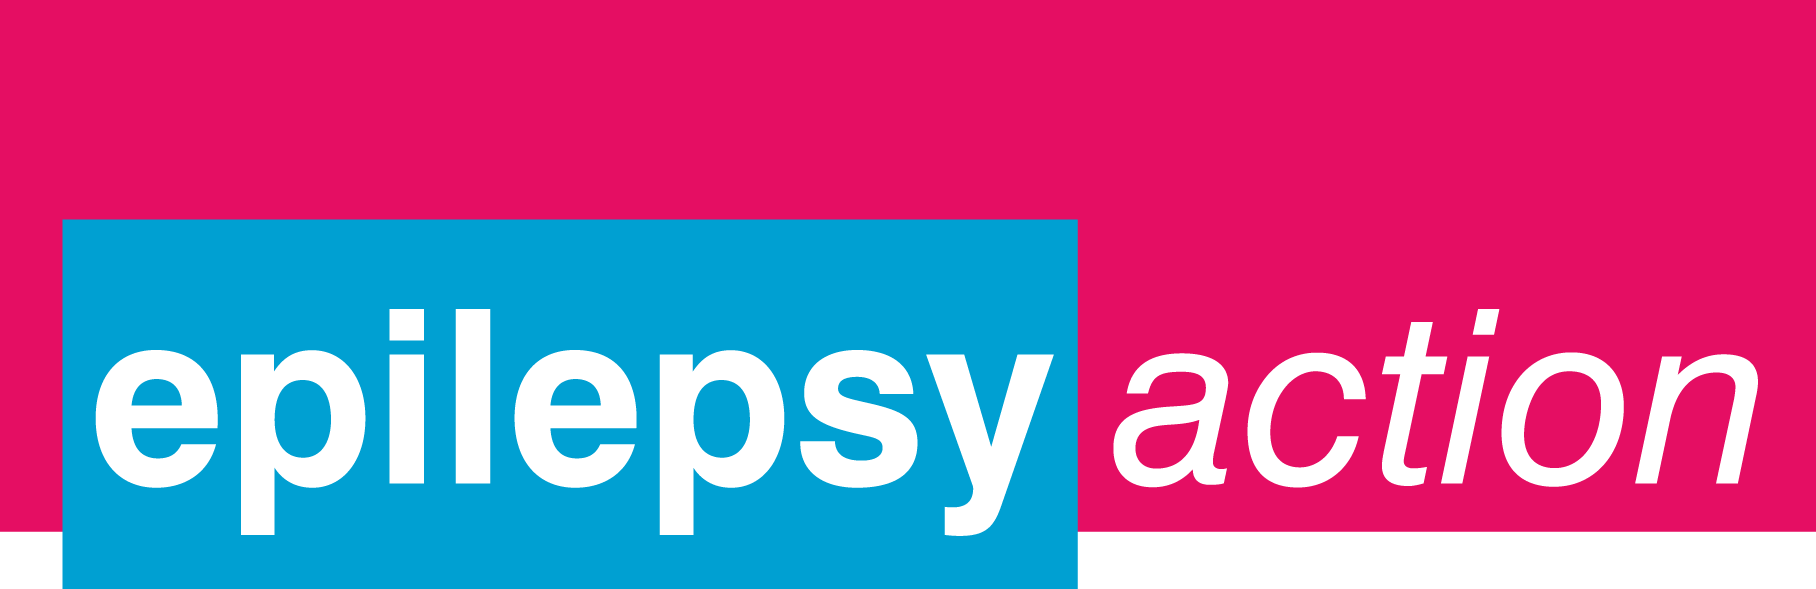 Epilepsy-Action-logo-FOR-WEB